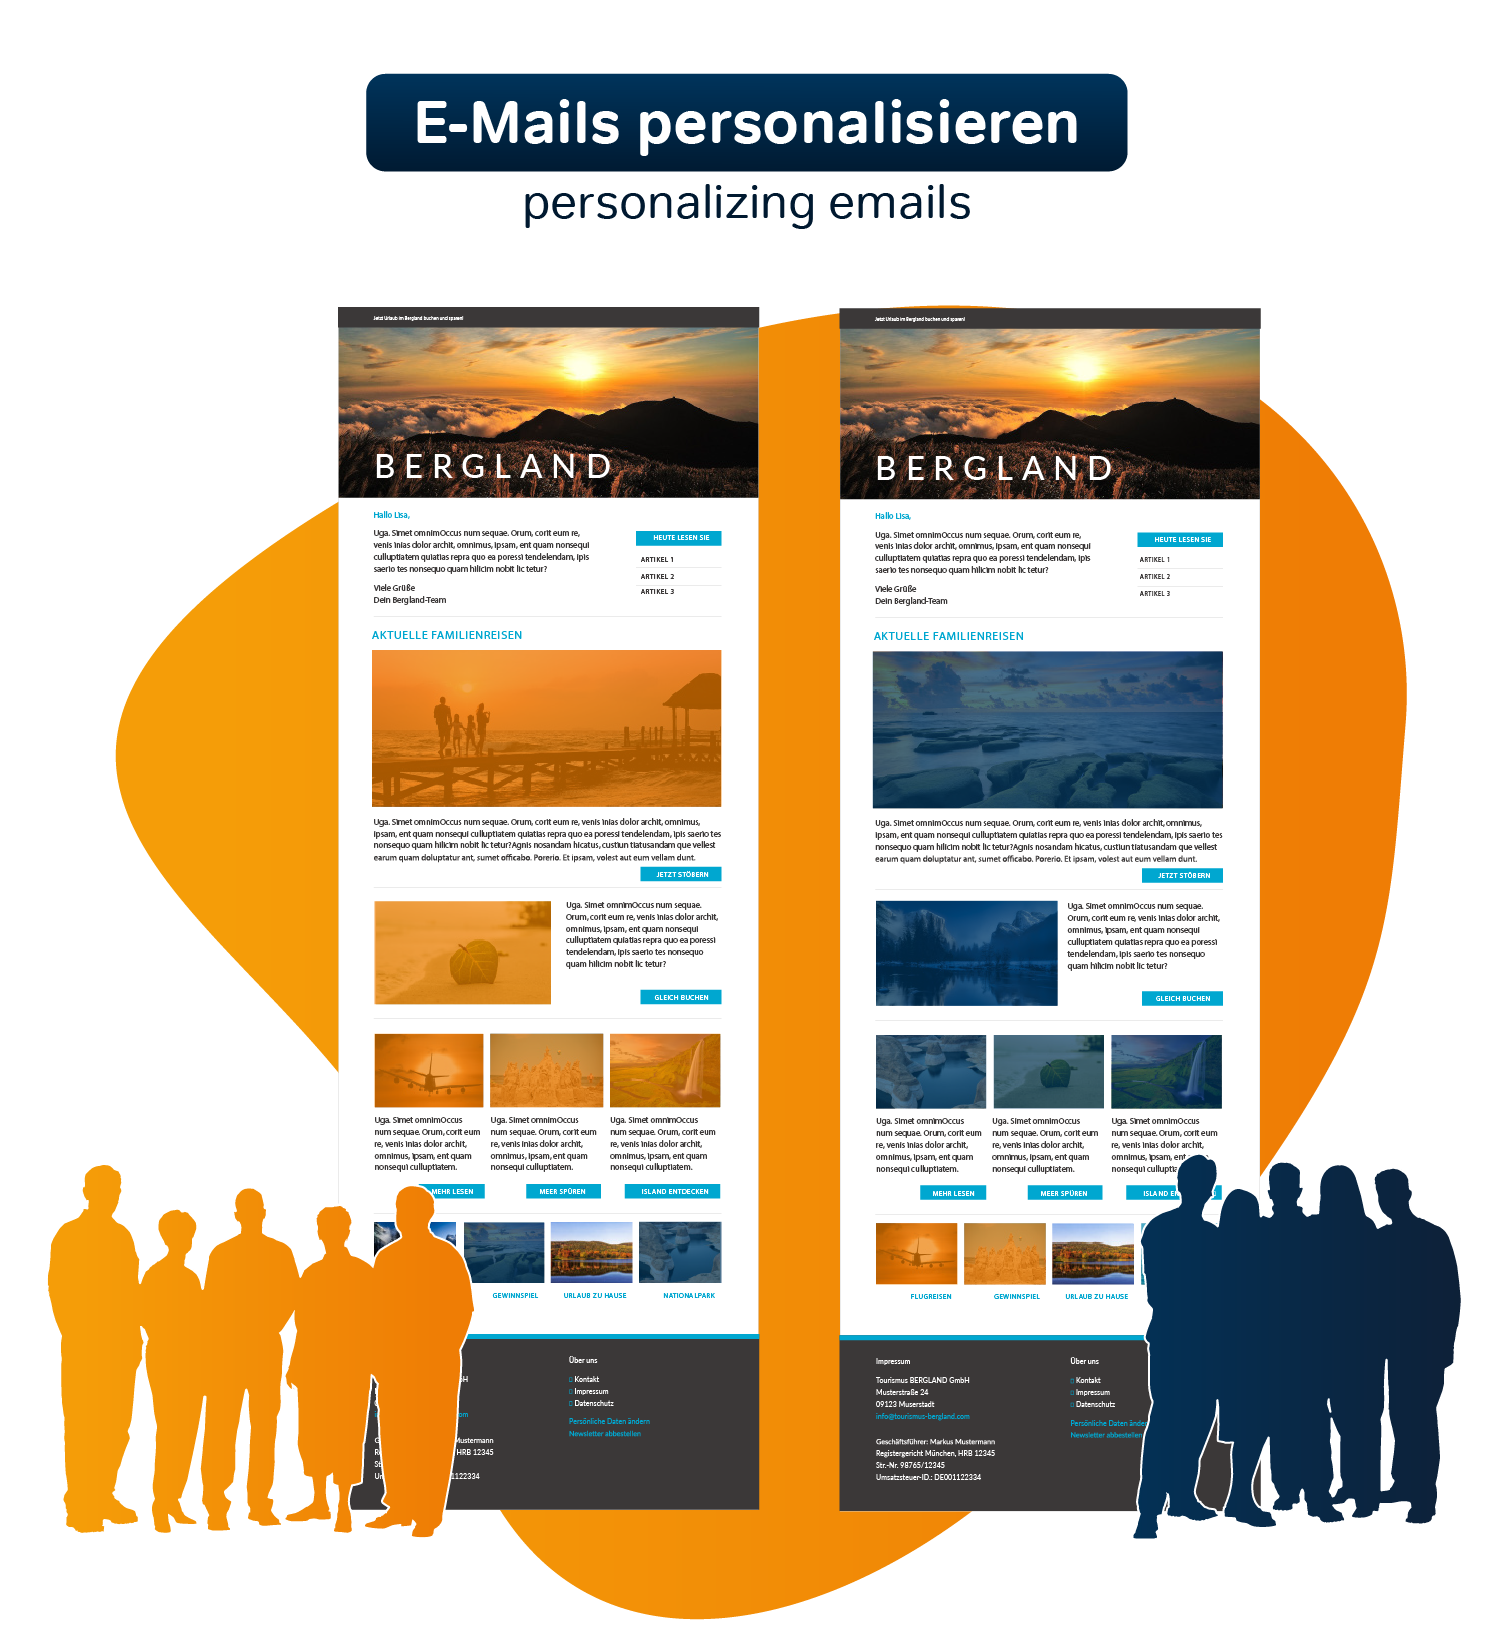 Personalizing emails
Tailored content for each individual contact

E-Mails personalisieren
Maßgeschneiderte Inhalte für jeden einzelnen Kontakt